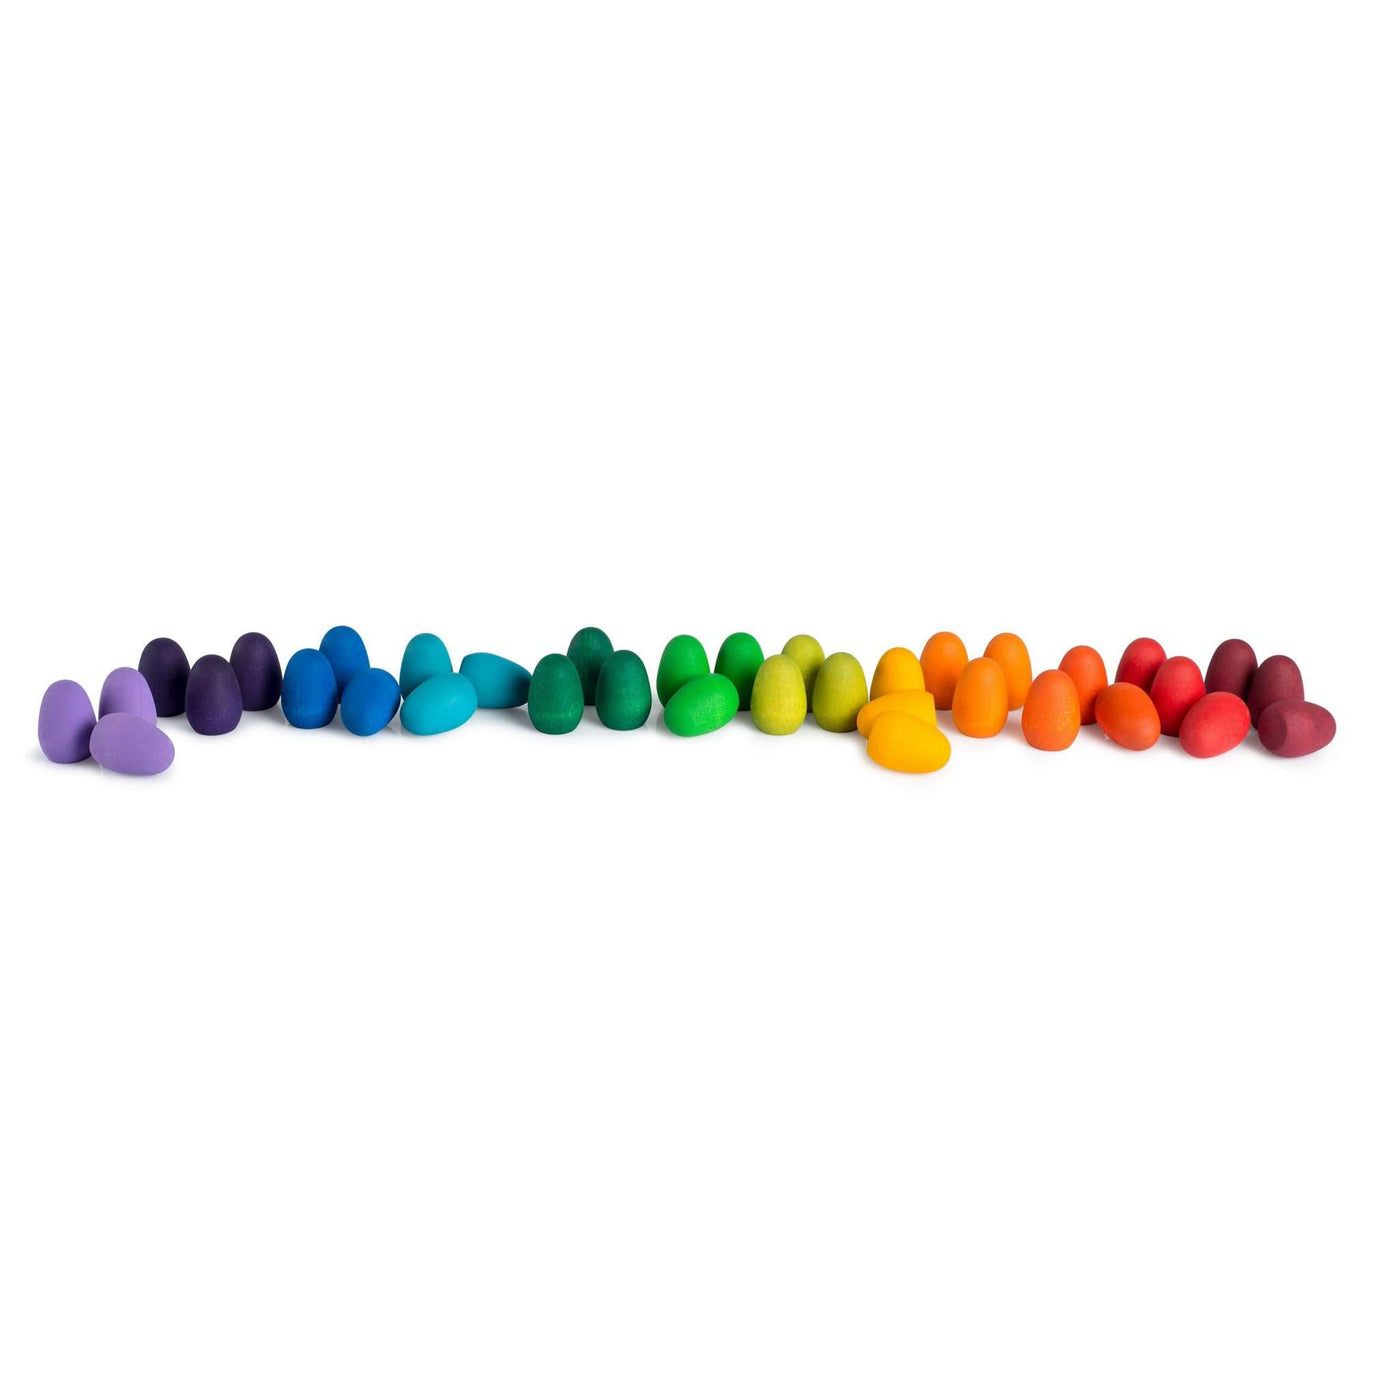 Art 21-223 Joguines Grapat Mandala Rainbow eggs